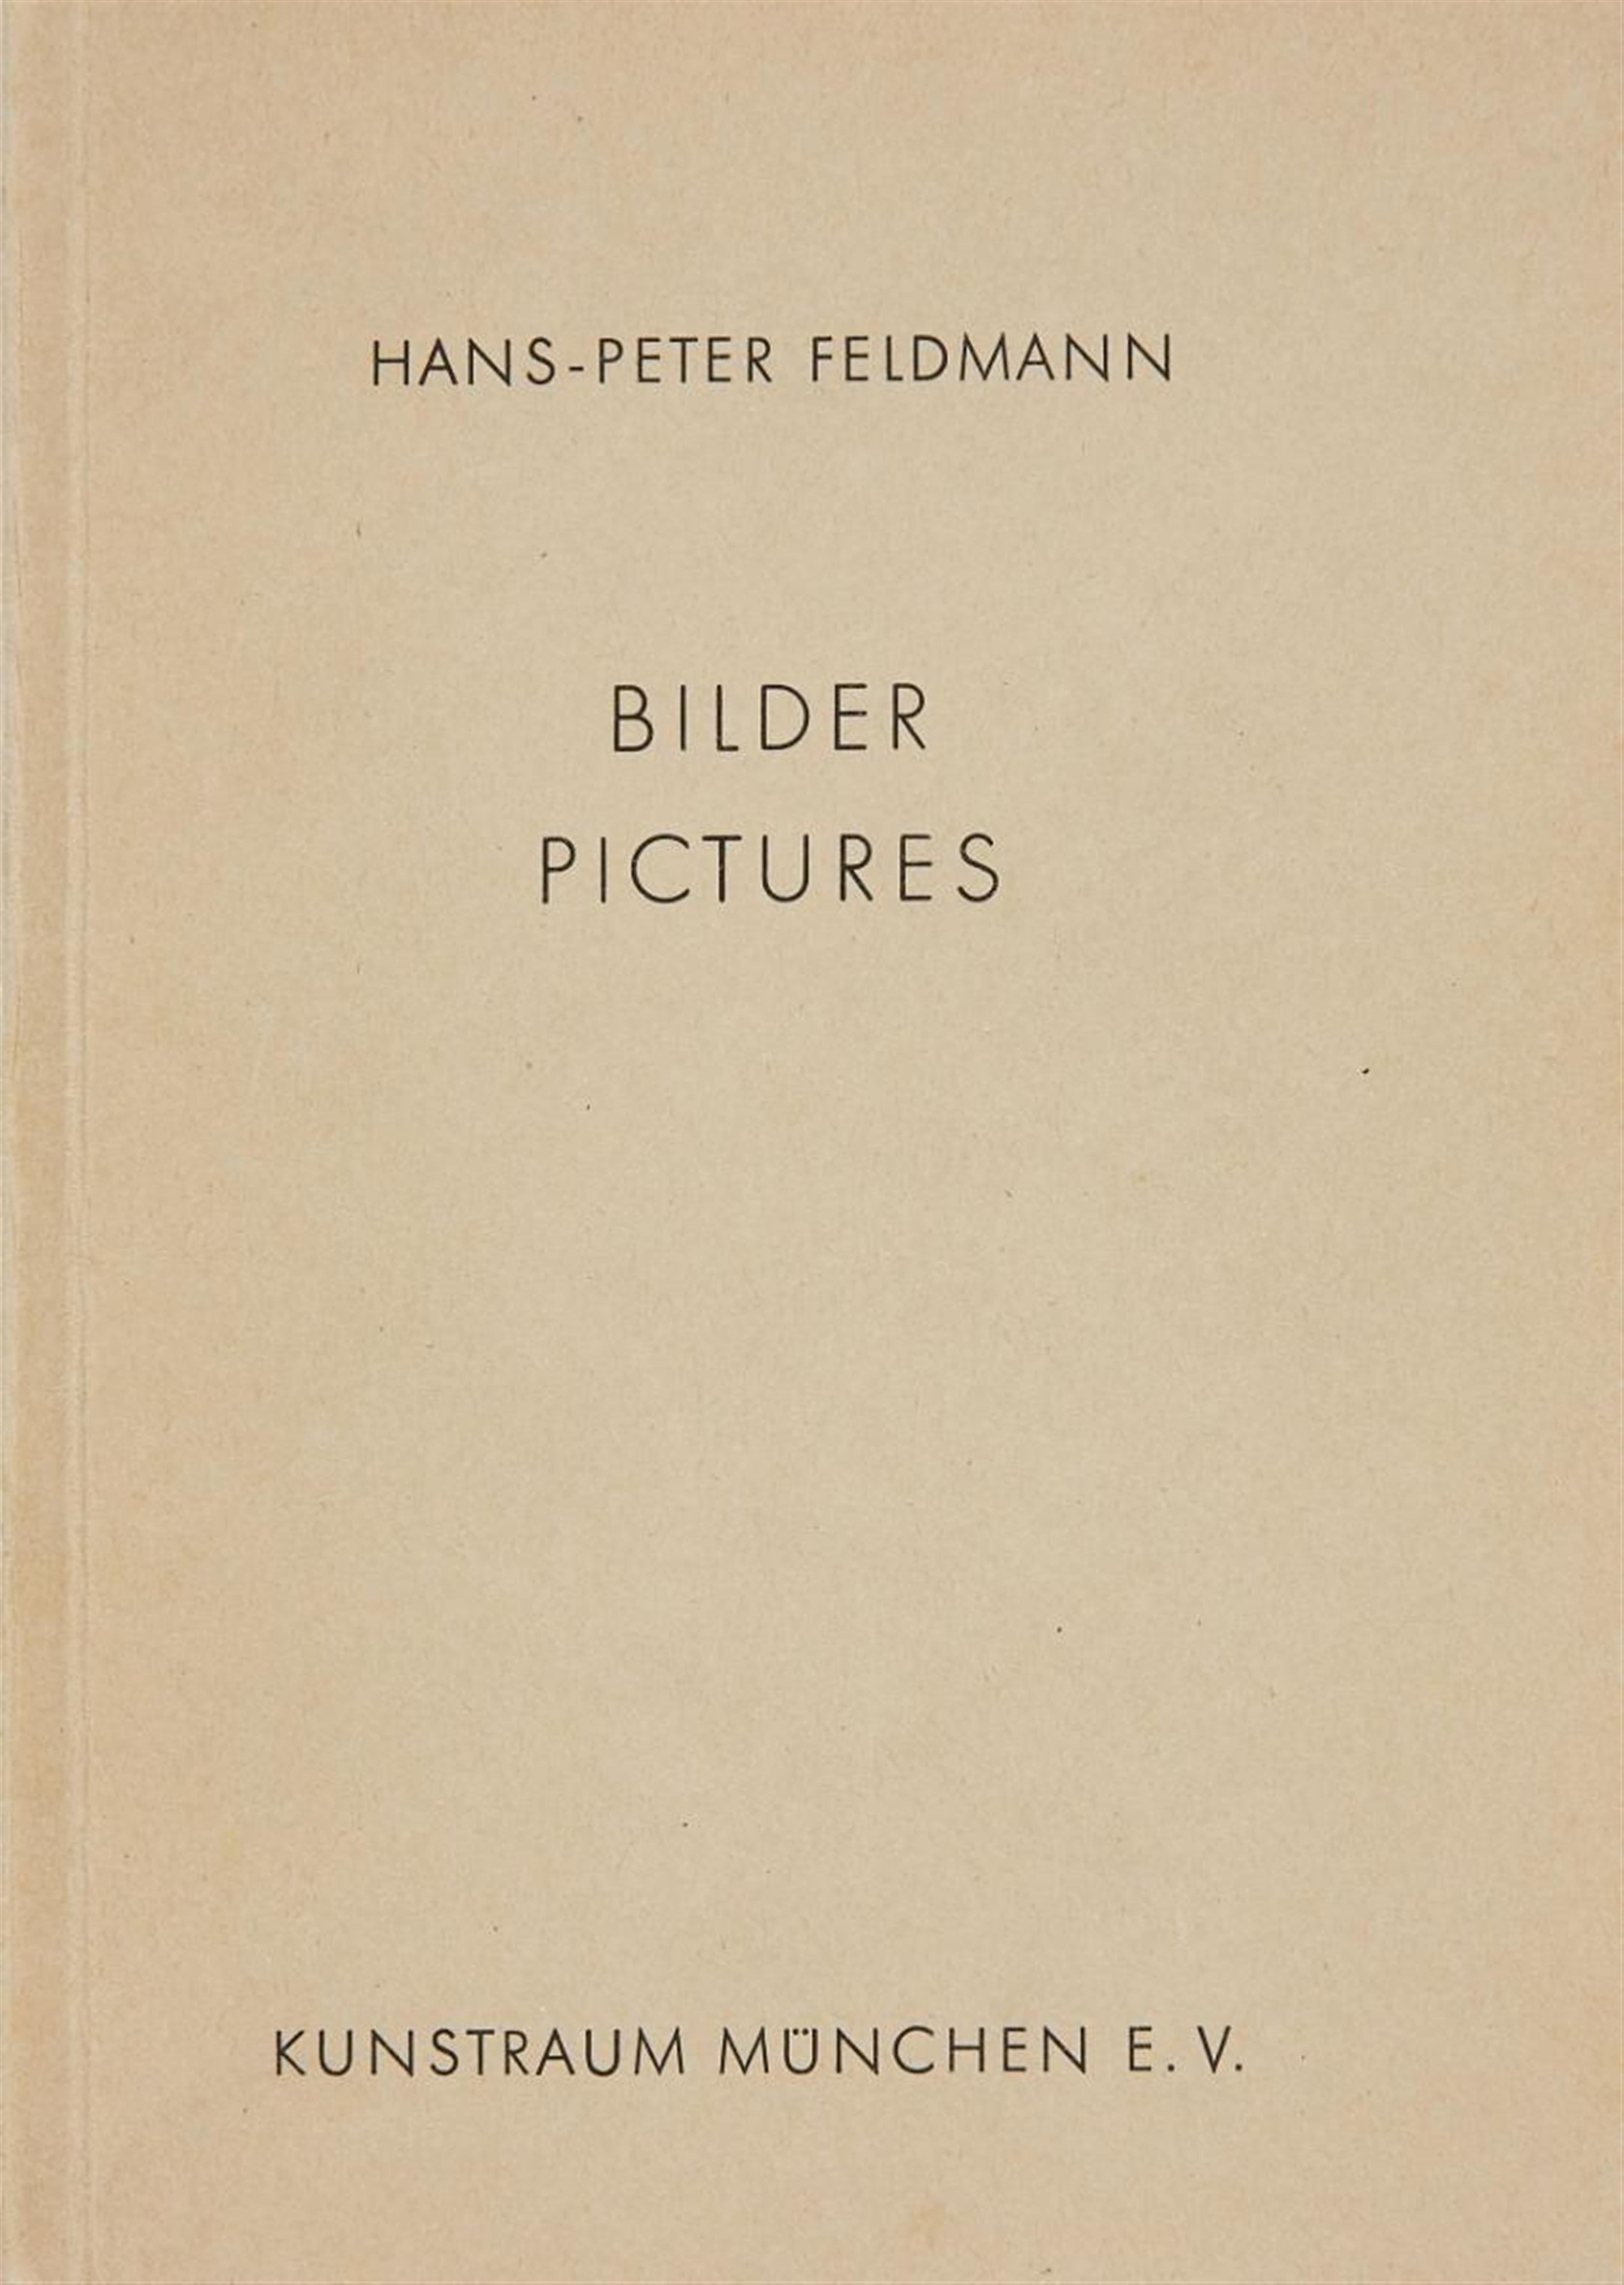 Hans-Peter Feldmann - Bilder. Pictures - image-1